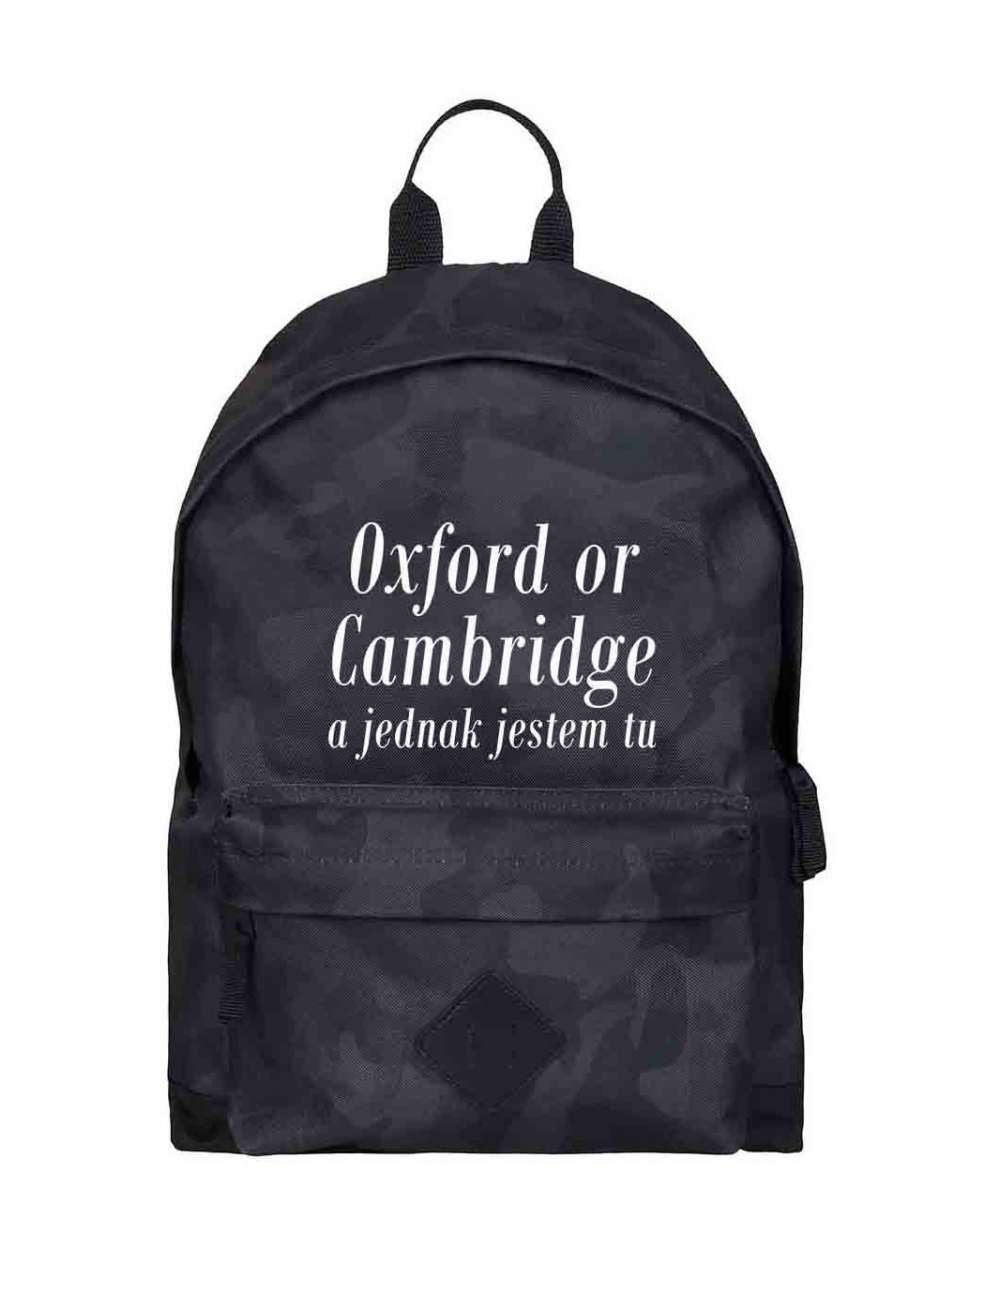 Plecak Szkolny Oxford Of Cambridge